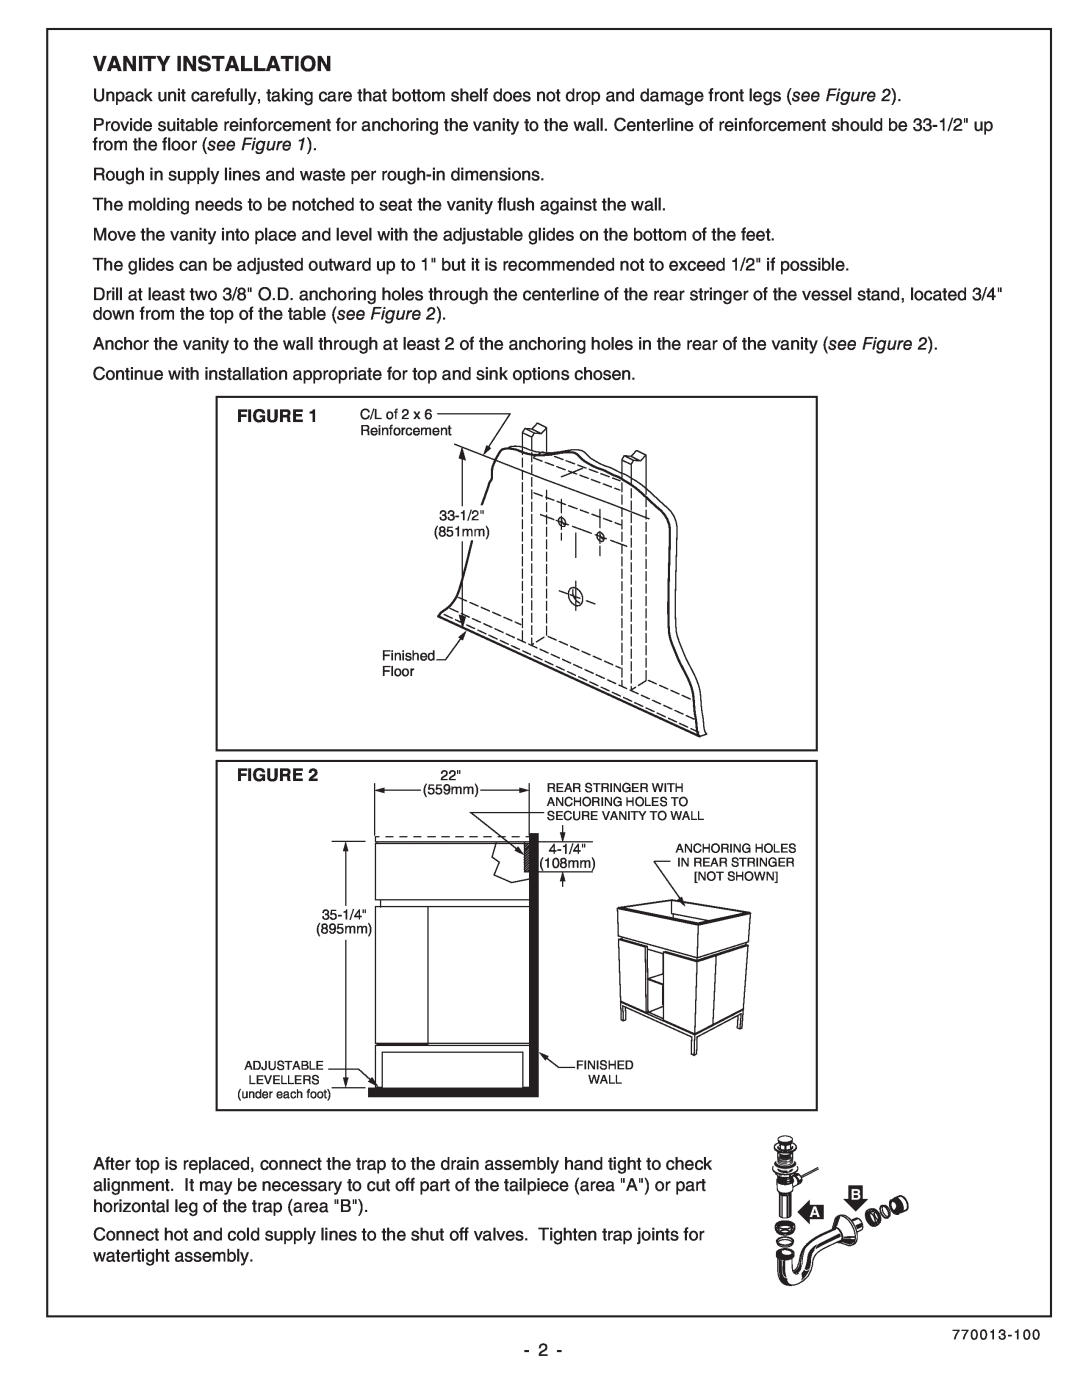 American Standard 9205.030.339 installation instructions Vanity Installation 